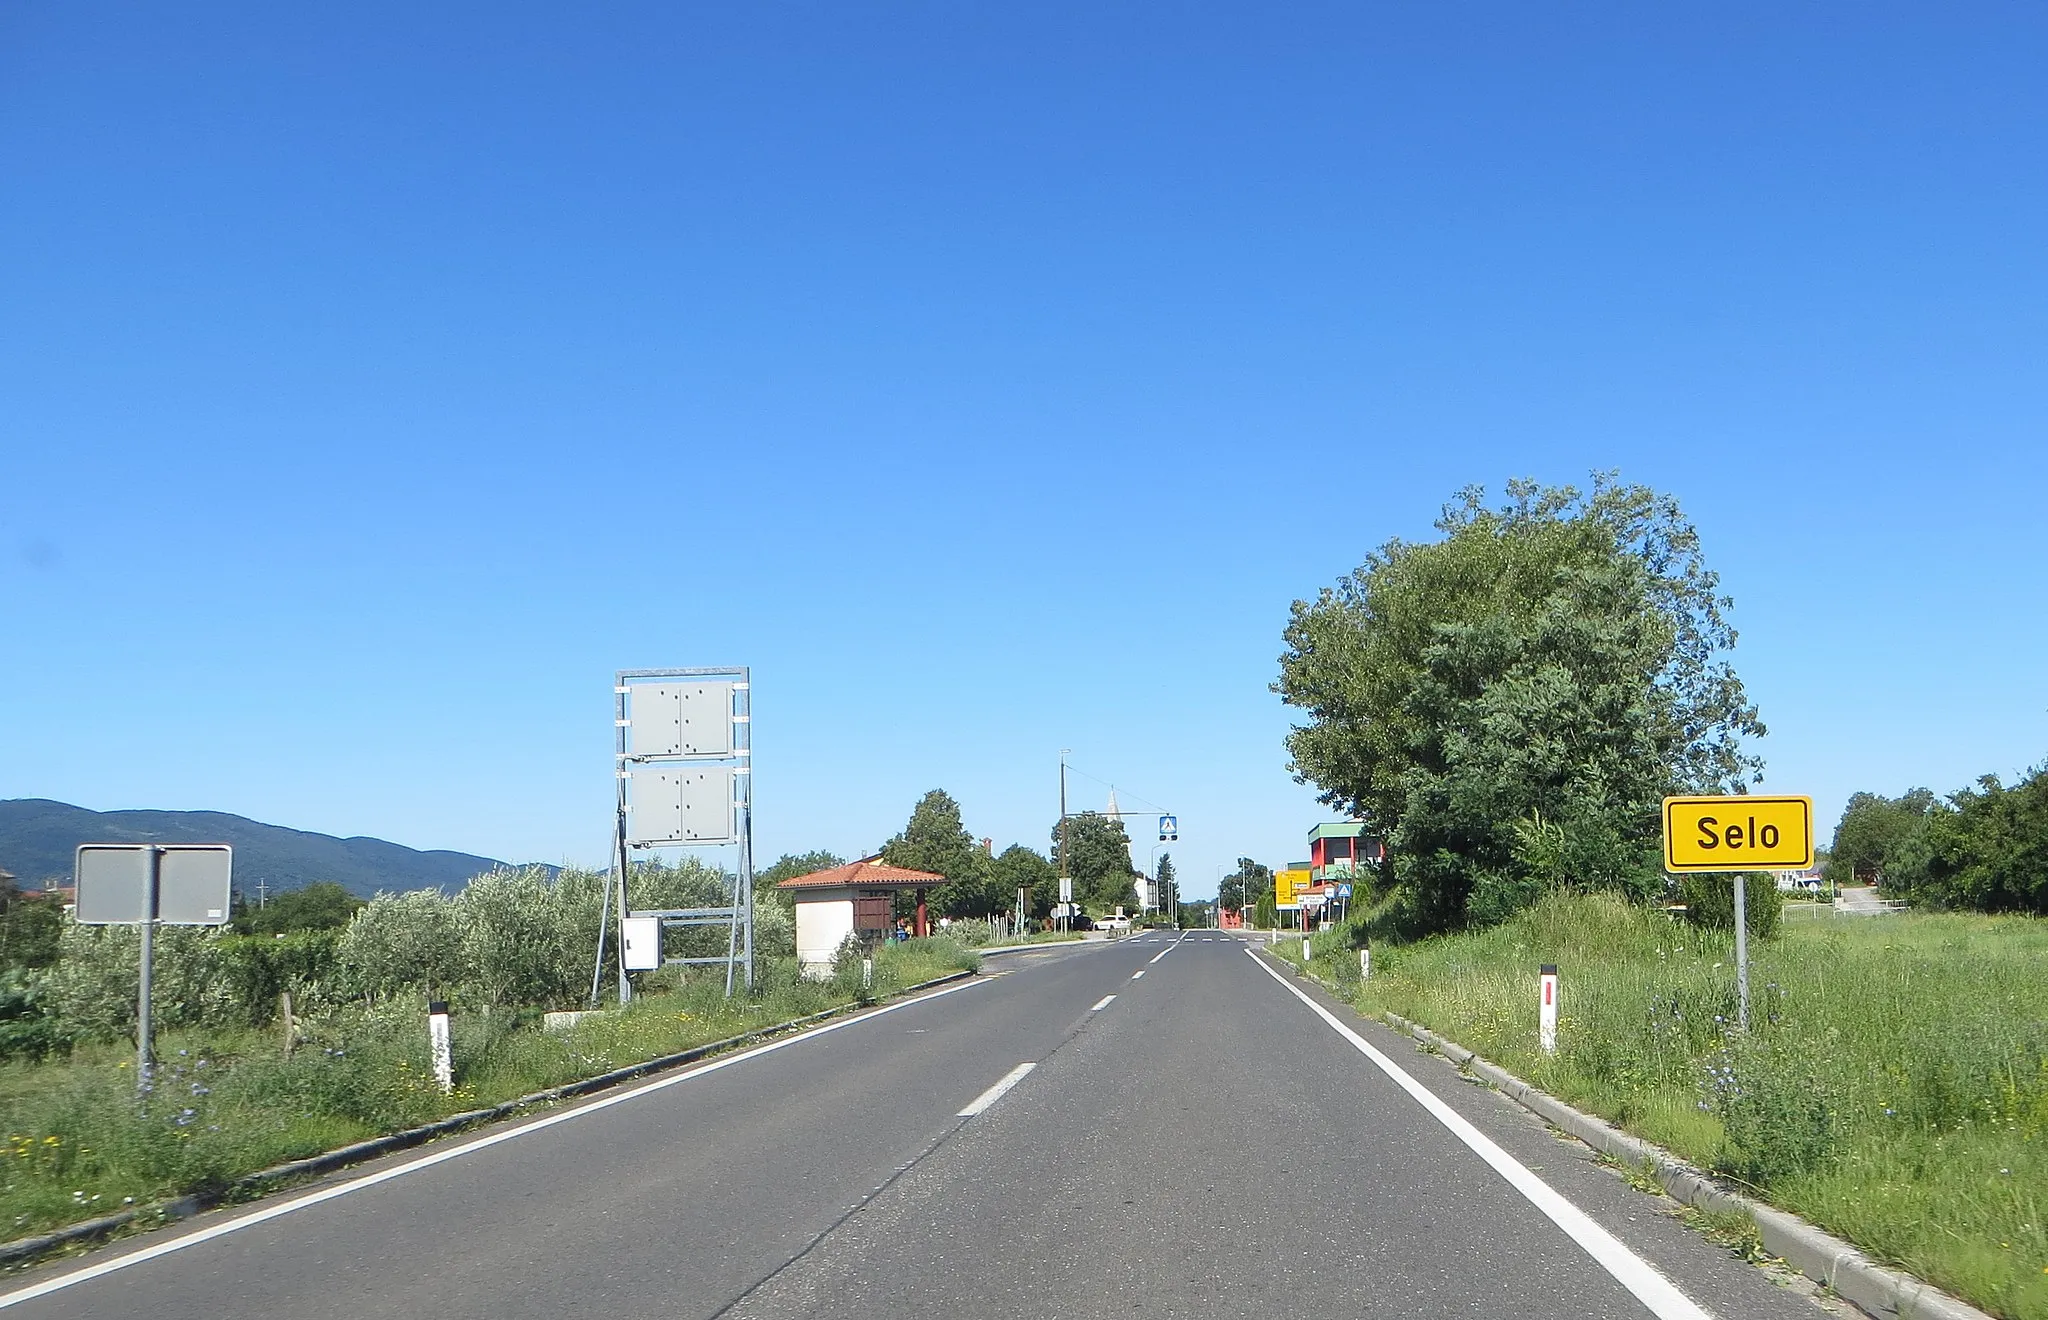 Photo showing: Selo, Municipality of Ajdovščina, Slovenia